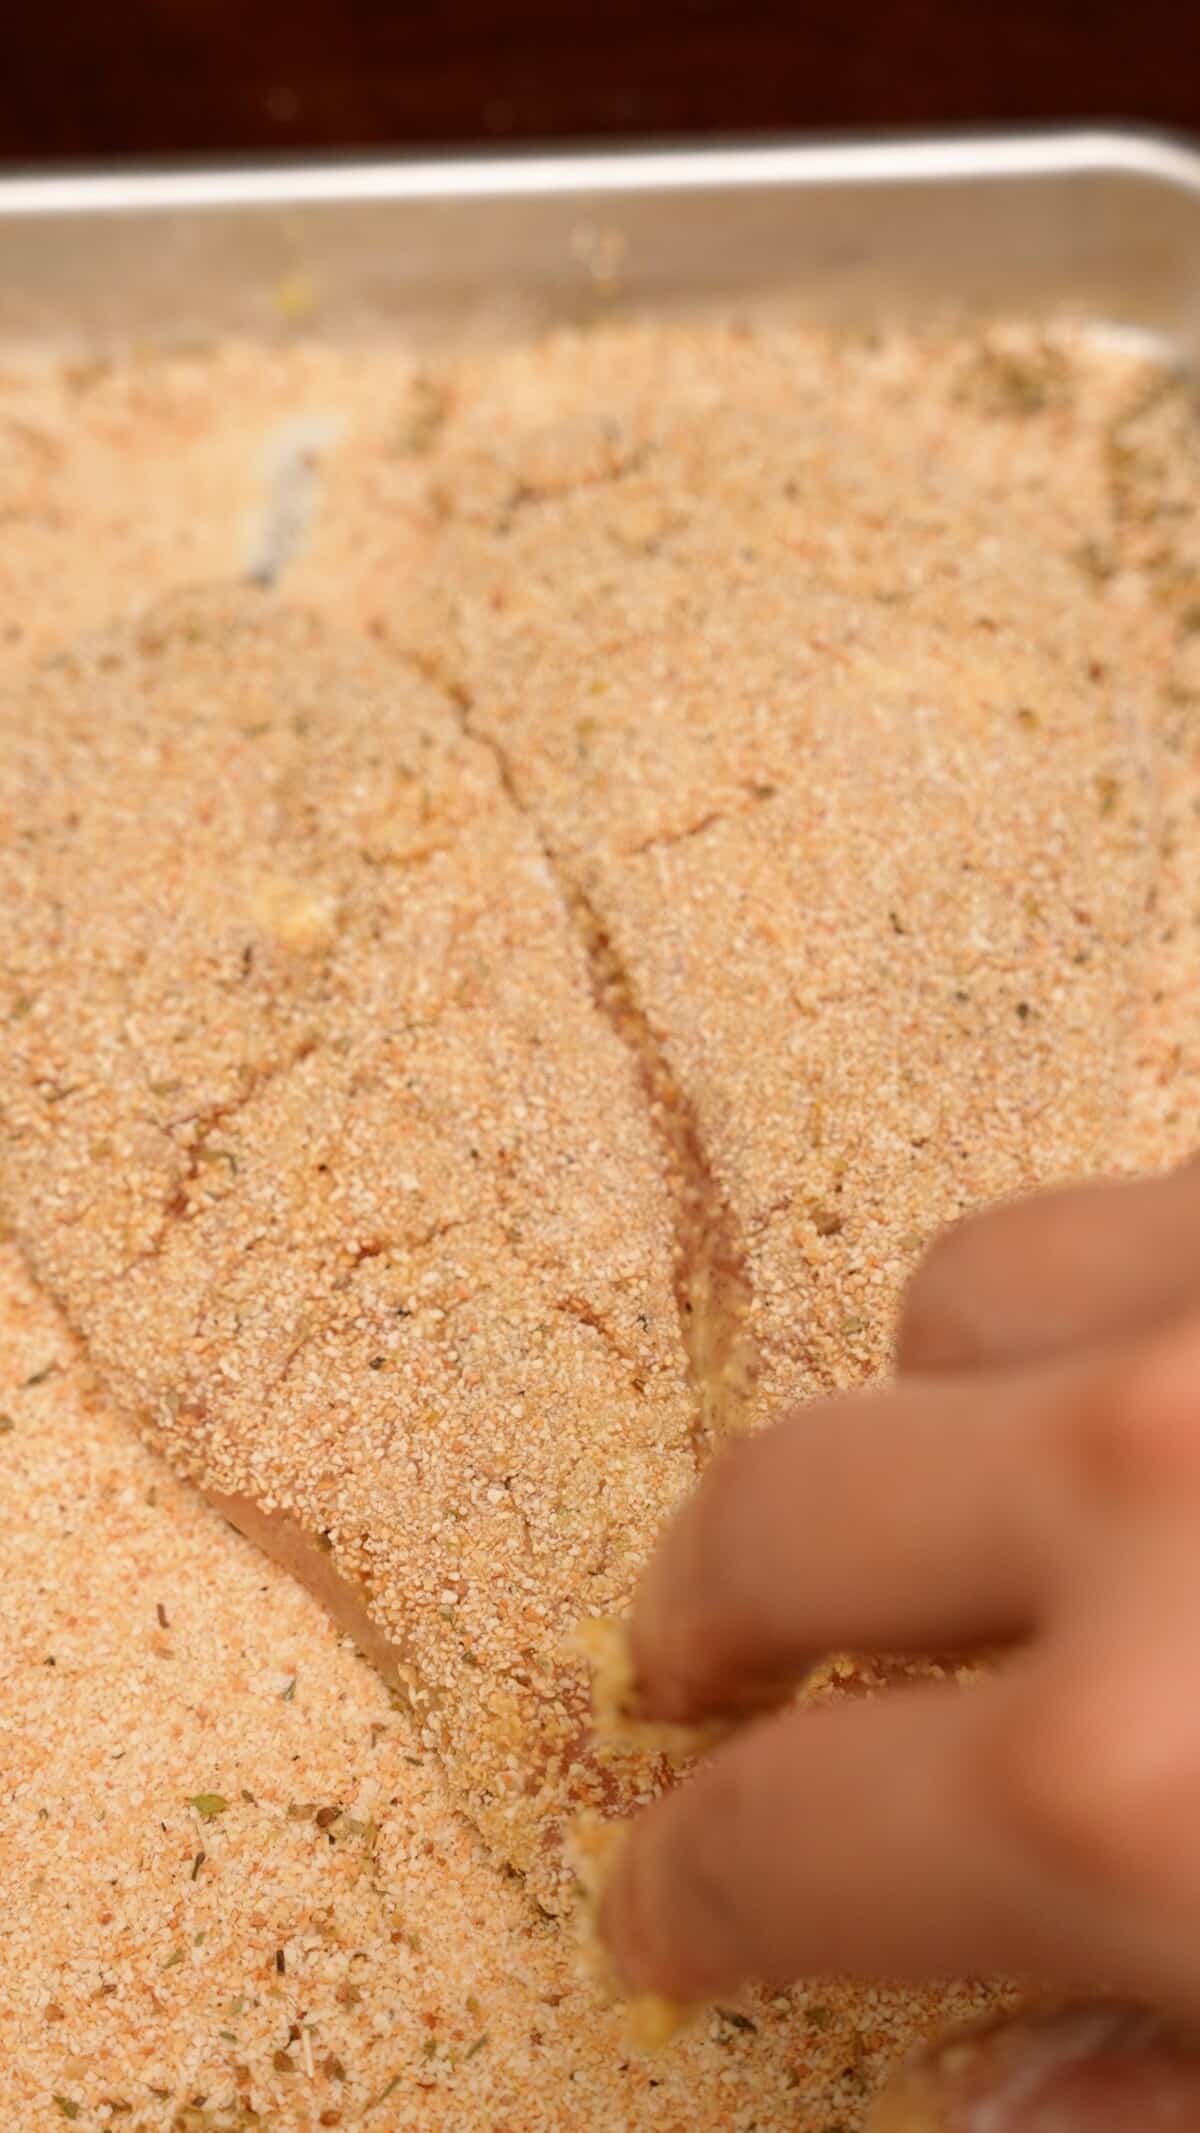 Dredging a chicken cutlet in seasoned breadcrumbs.